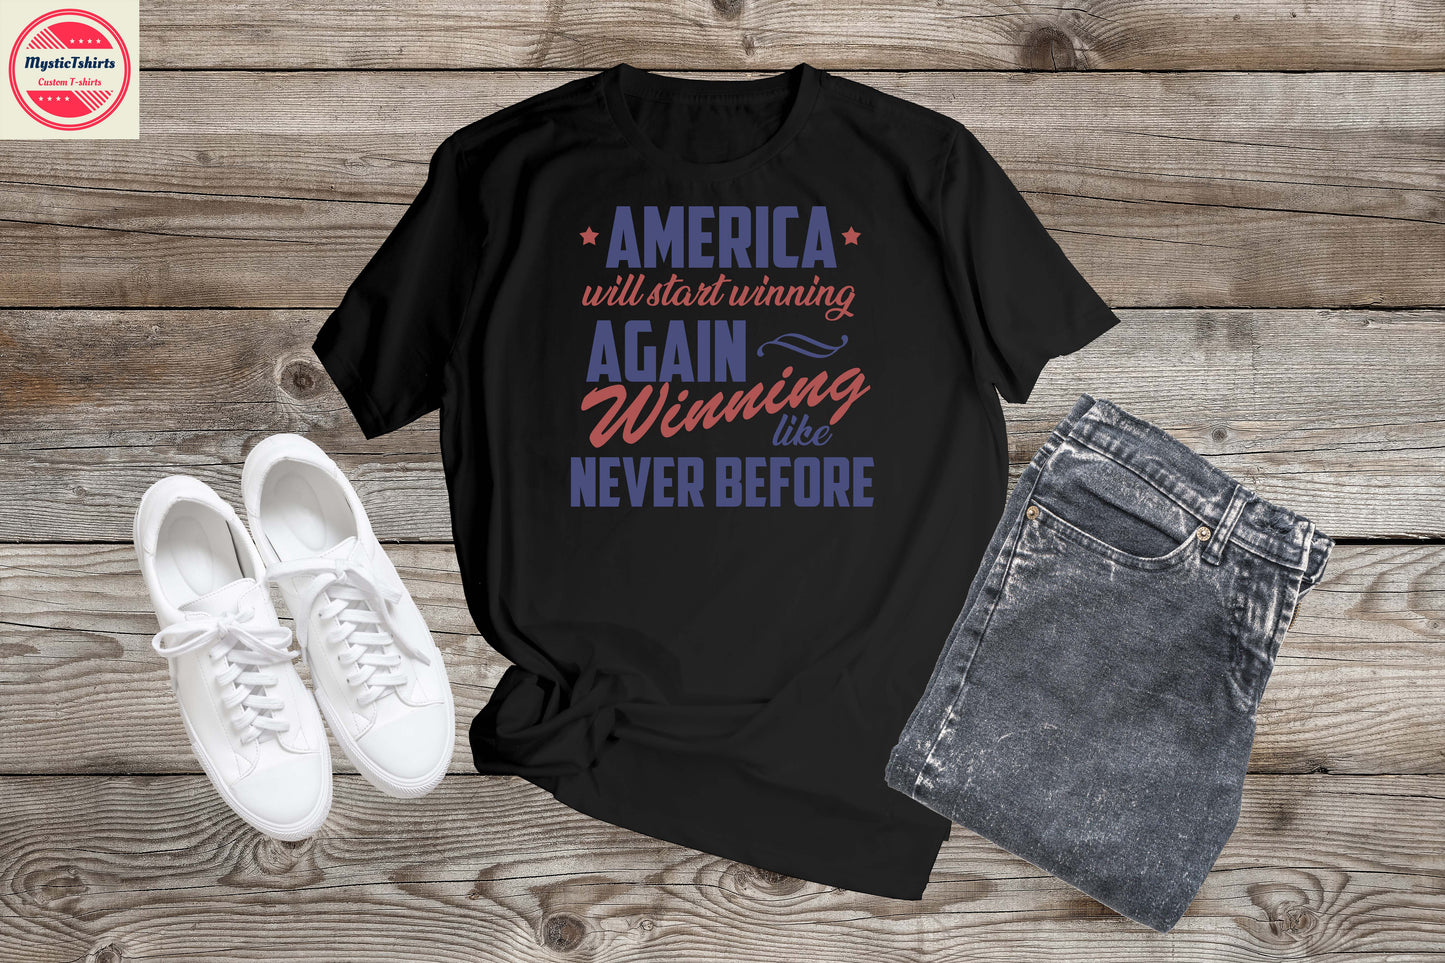 015. AMERICA WILL START WINNING AGAIN WINNING LIKE NEVERE BEFORE, Custom Made Shirt, Personalized T-Shirt, Custom Text, Make Your Own Shirt, Custom Tee